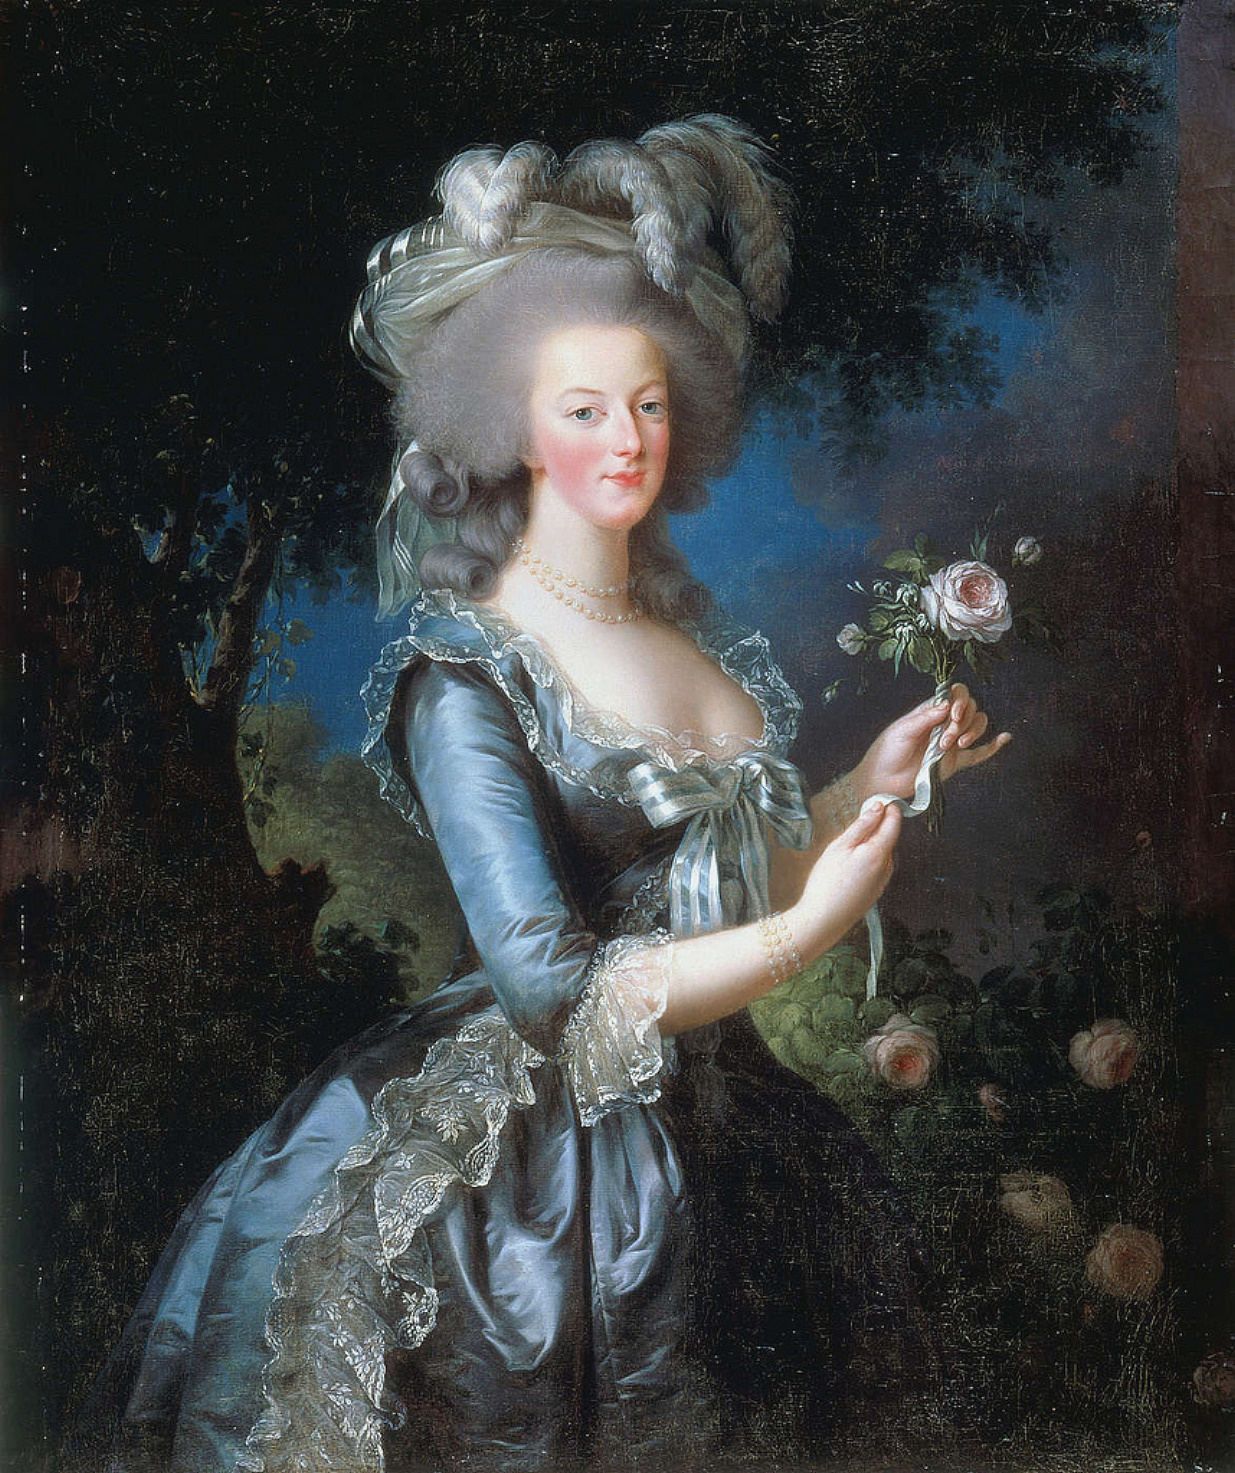 Portrait of Marie Antoinette by Élisabeth Vigee Le Brun - 1783 Château de Versailles